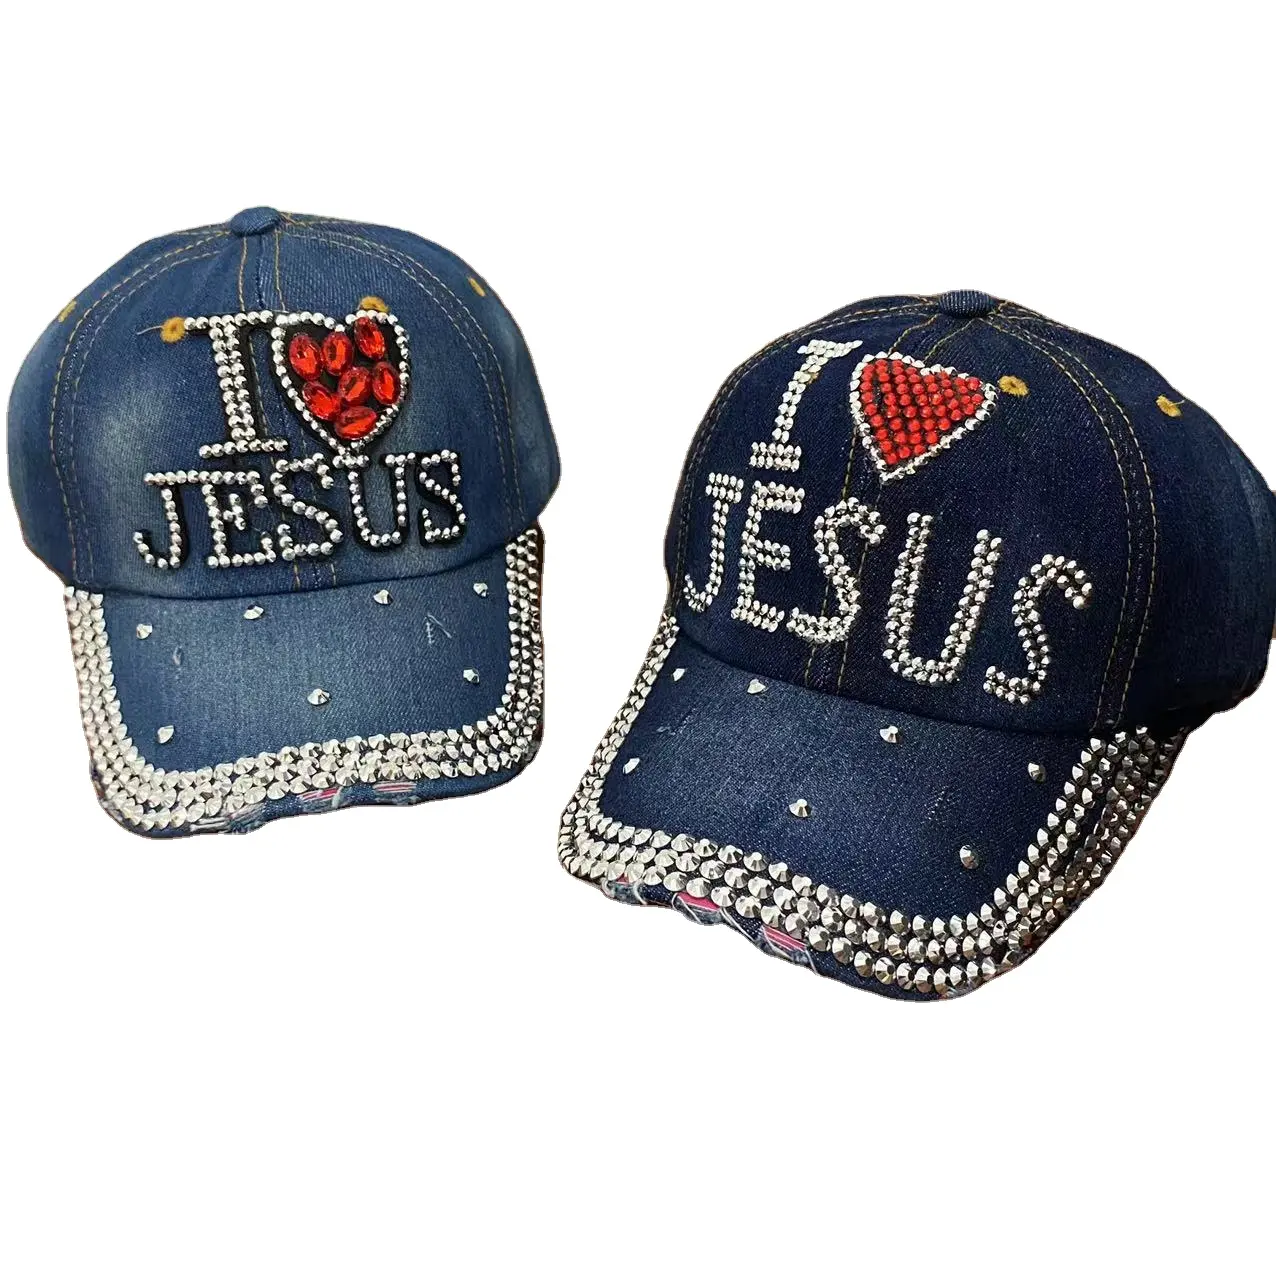 I love Jesus Crystal Denim Cap Washed Jean Baseball hat 2020102013